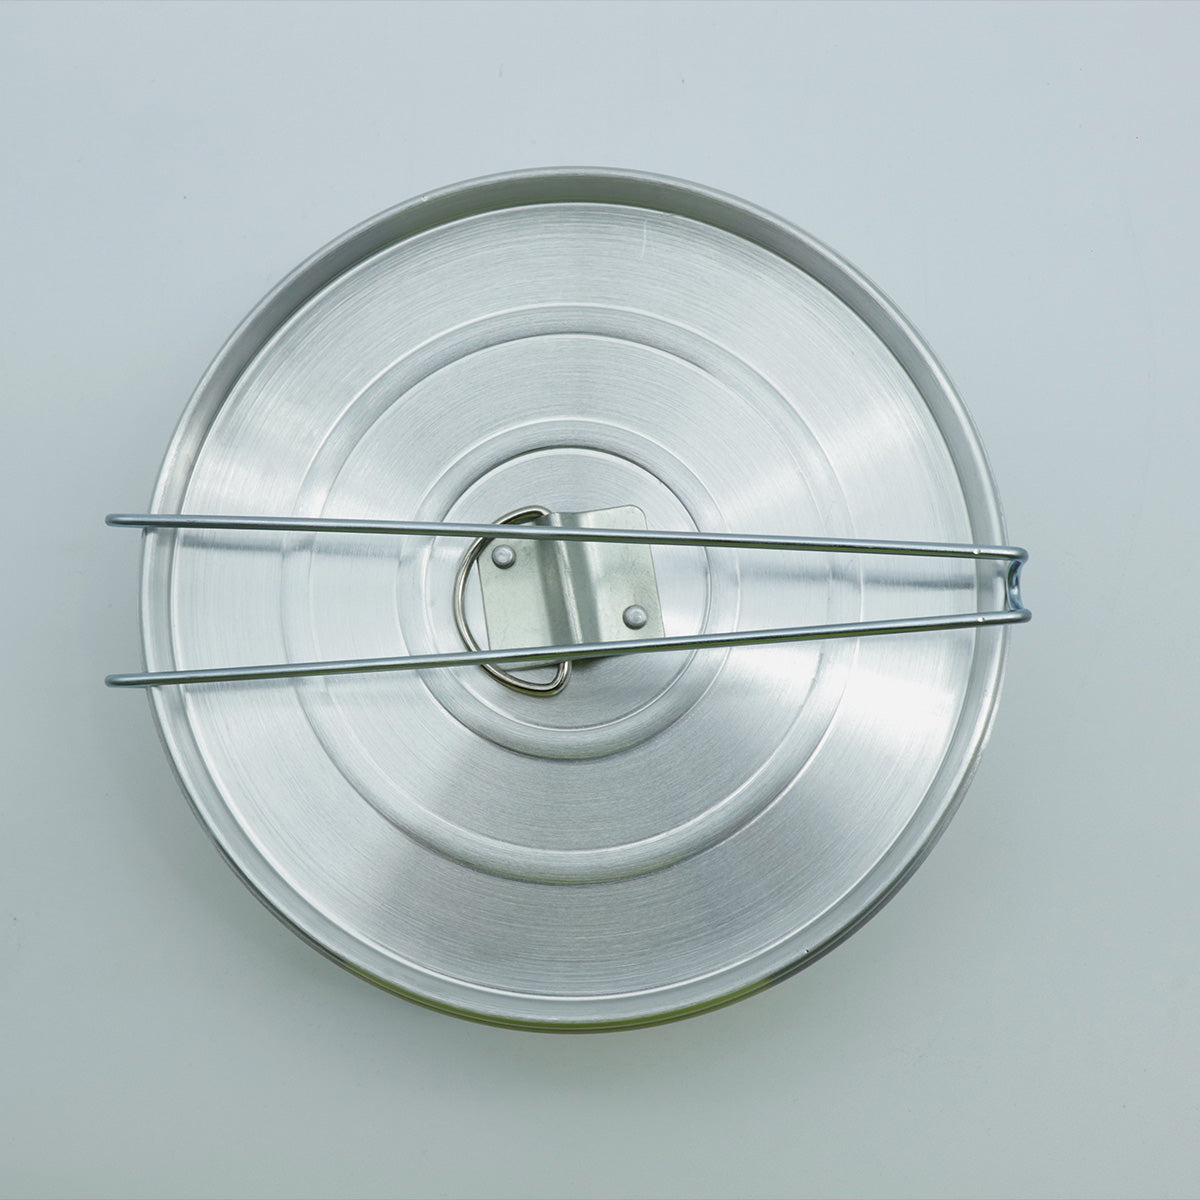 Flanera de Aluminio con Tapa de 20 cm con Cierre